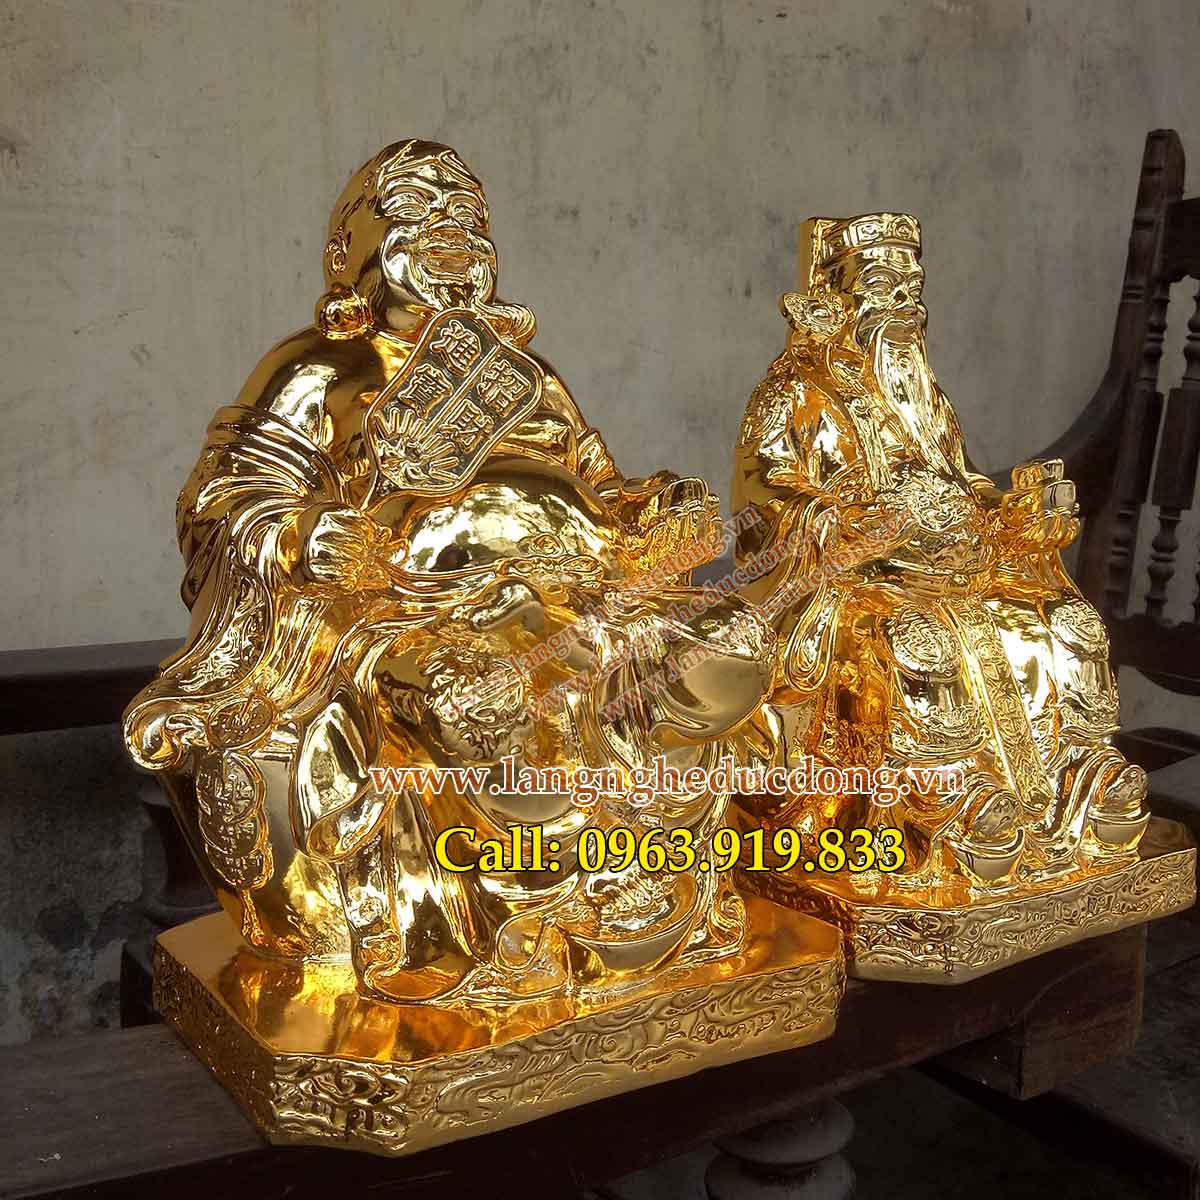 langngheducdong.vn – Tượng thần tài ông địa thổ địa 25cm, tượng đồng thàn tài, tượng đồng ông địa, tượng mạ vàng nano, mạ vàng nano